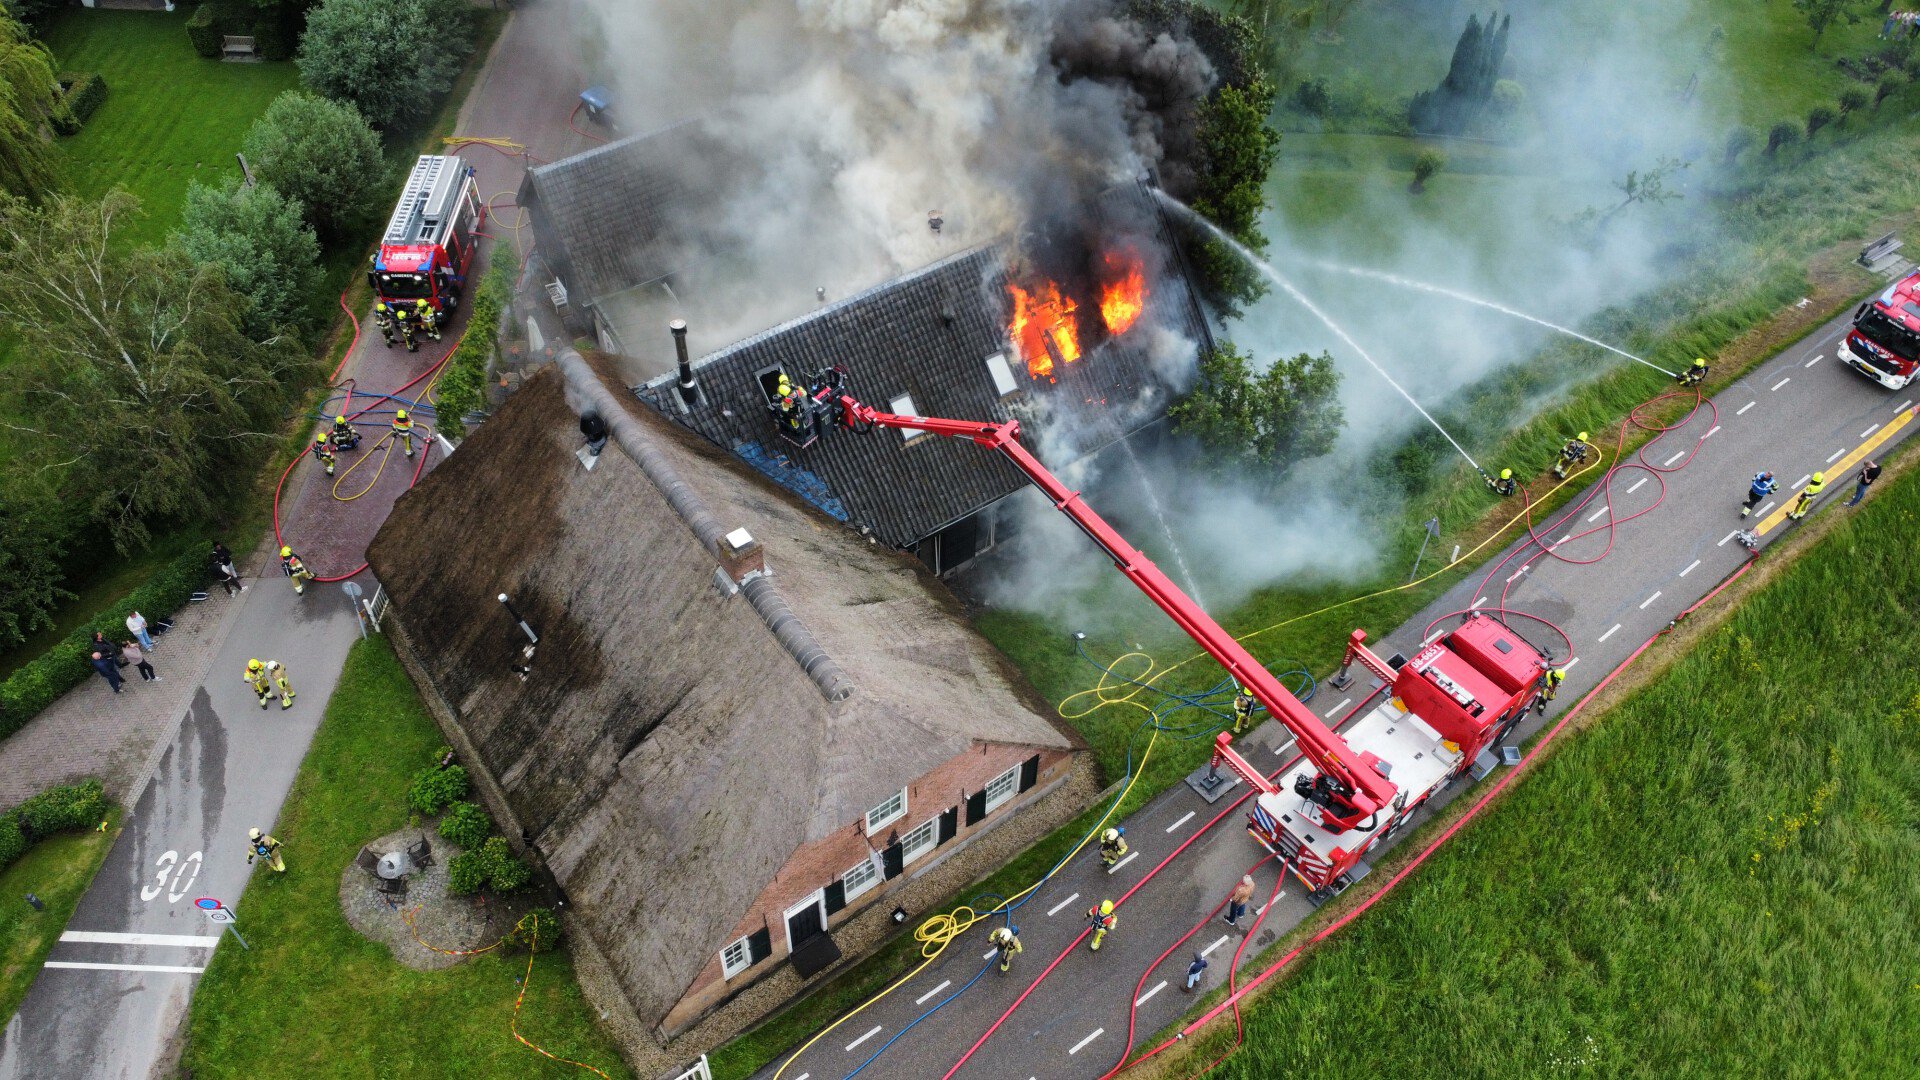 Restaurant met rieten dak in brand